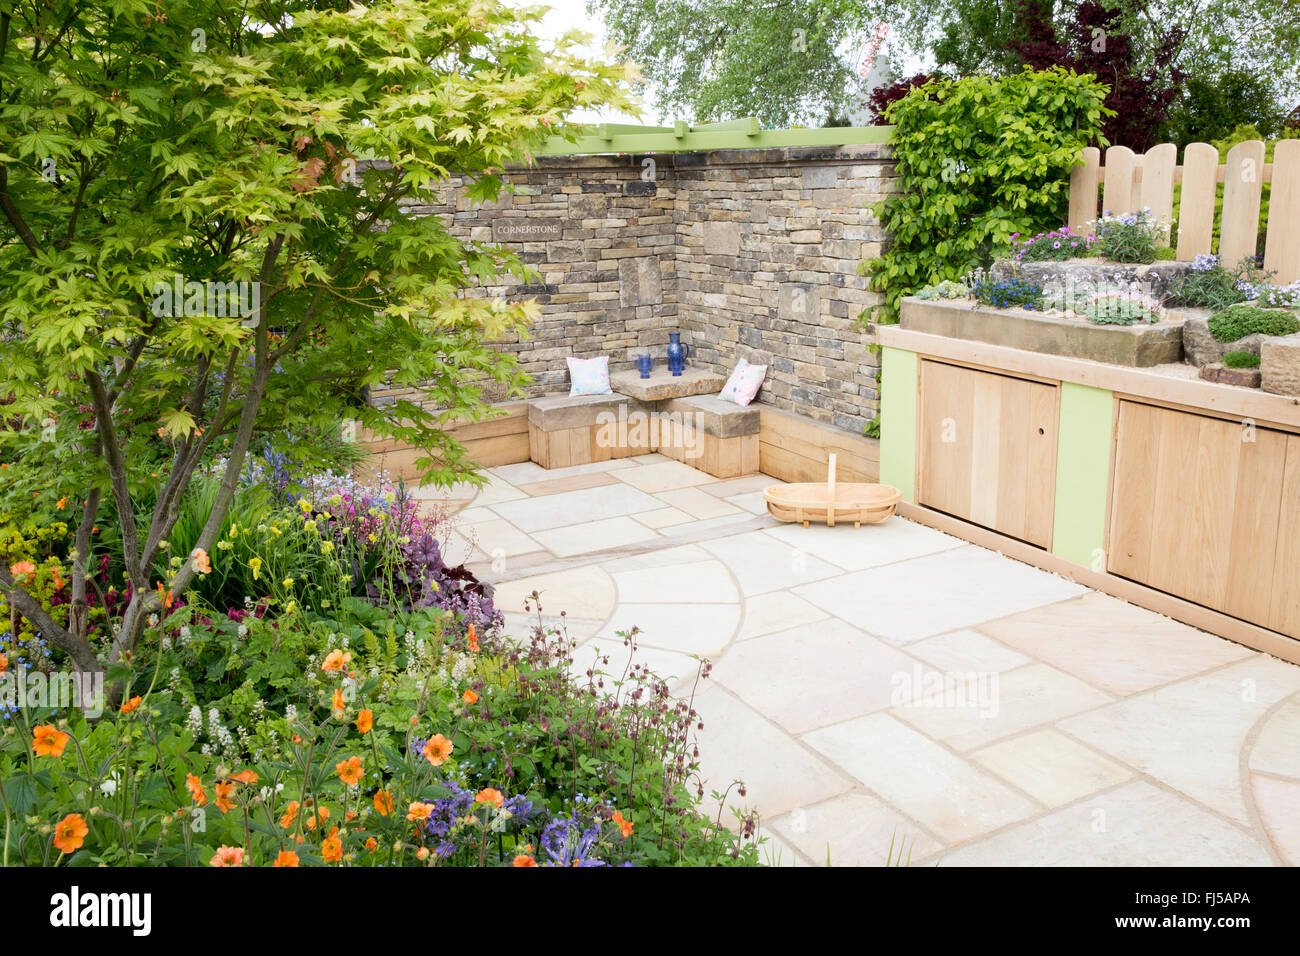 Ein kleiner englischer Garten mit Blumenbeeten und einer Terrasse aus Steinplatten - Aufbewahrungsbank - Steinbank und alpinen Pflanzen in Steintrögen Containern Spring UK Stockfoto